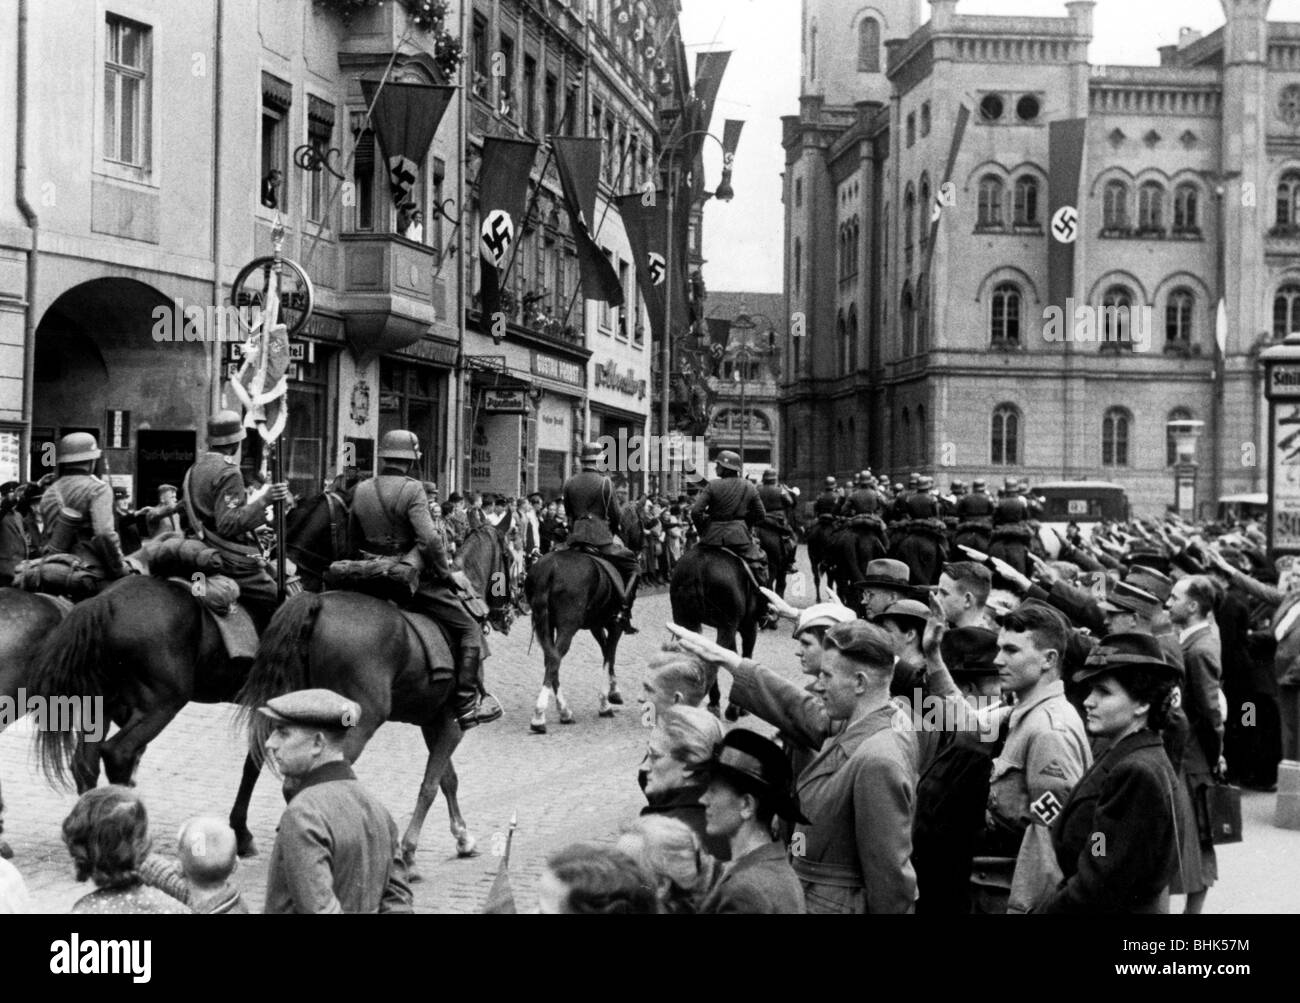 Nazisme / socialisme national, politique, occupation des Sudètes, 1.10.1938 - 10.10.1938, montage de l'unité Wehrmacht dans une ville, accueilli par les citoyens, Banque D'Images